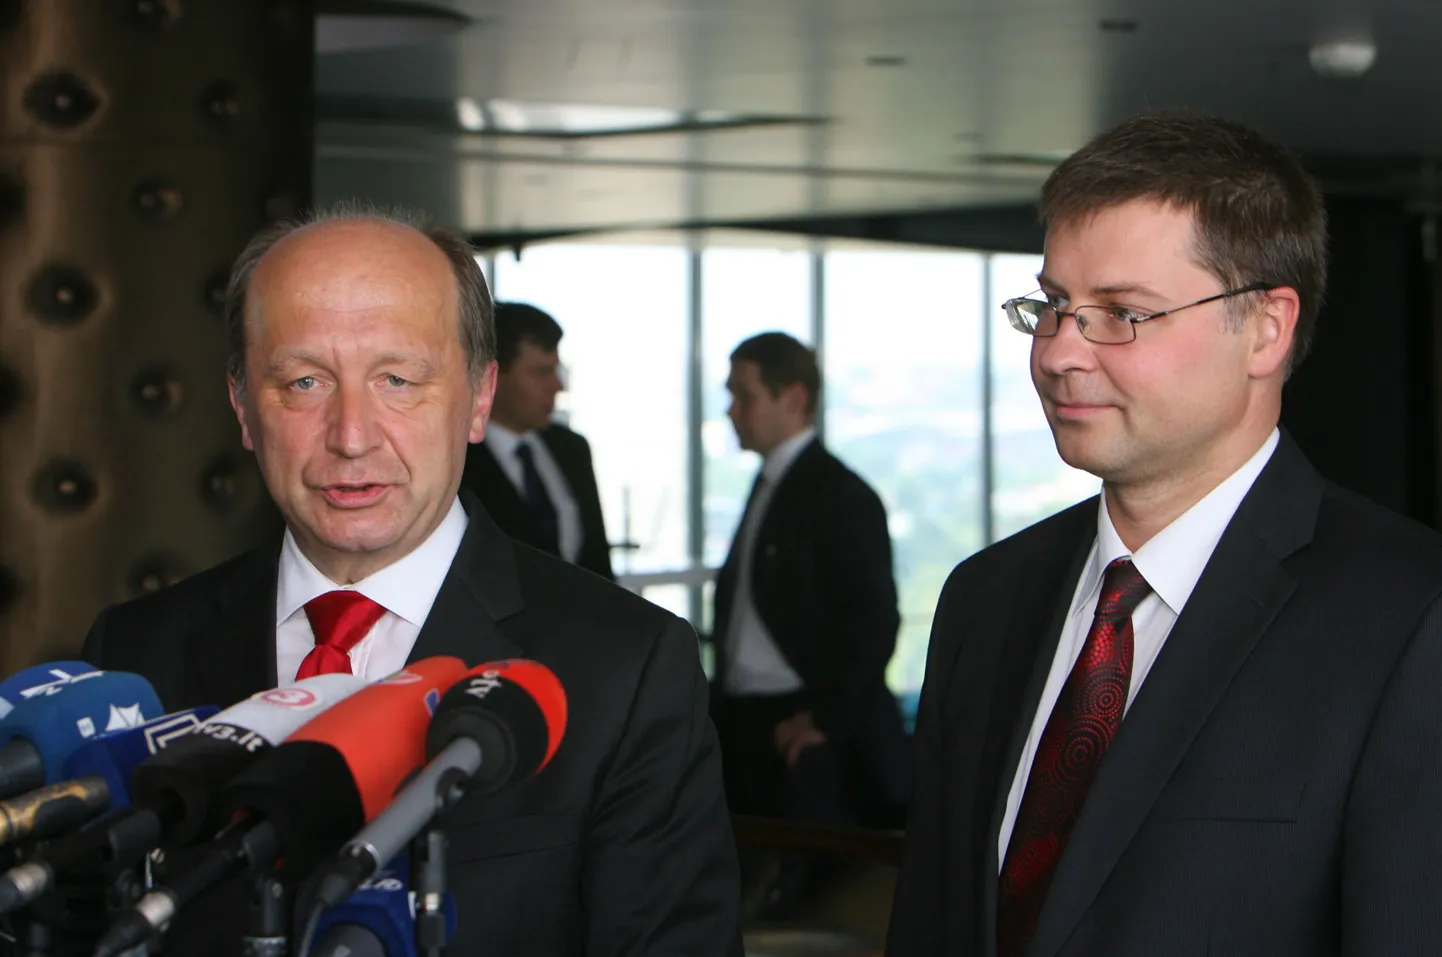 Leedu peaminister Andrius Kubilius (vasakult) ja Läti peaminister Valdis Dombrovskis.